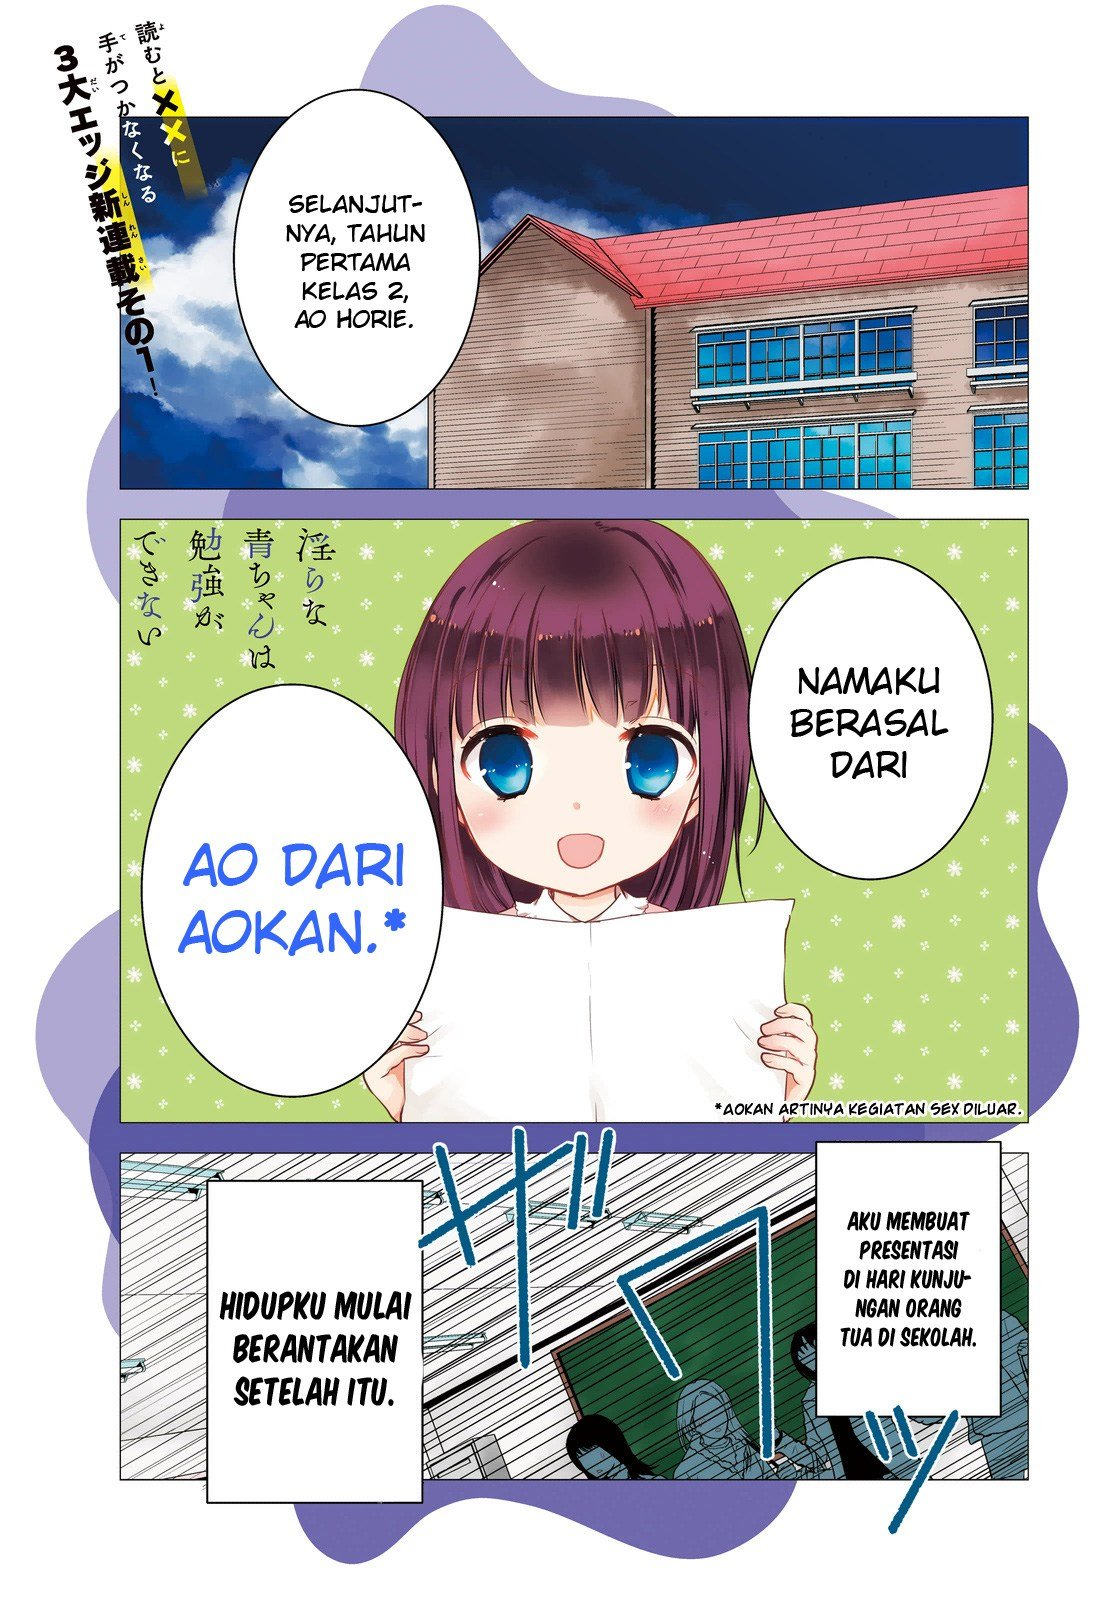 Baca Midara na Ao-chan wa Benkyou ga Dekinai Chapter 1  - GudangKomik